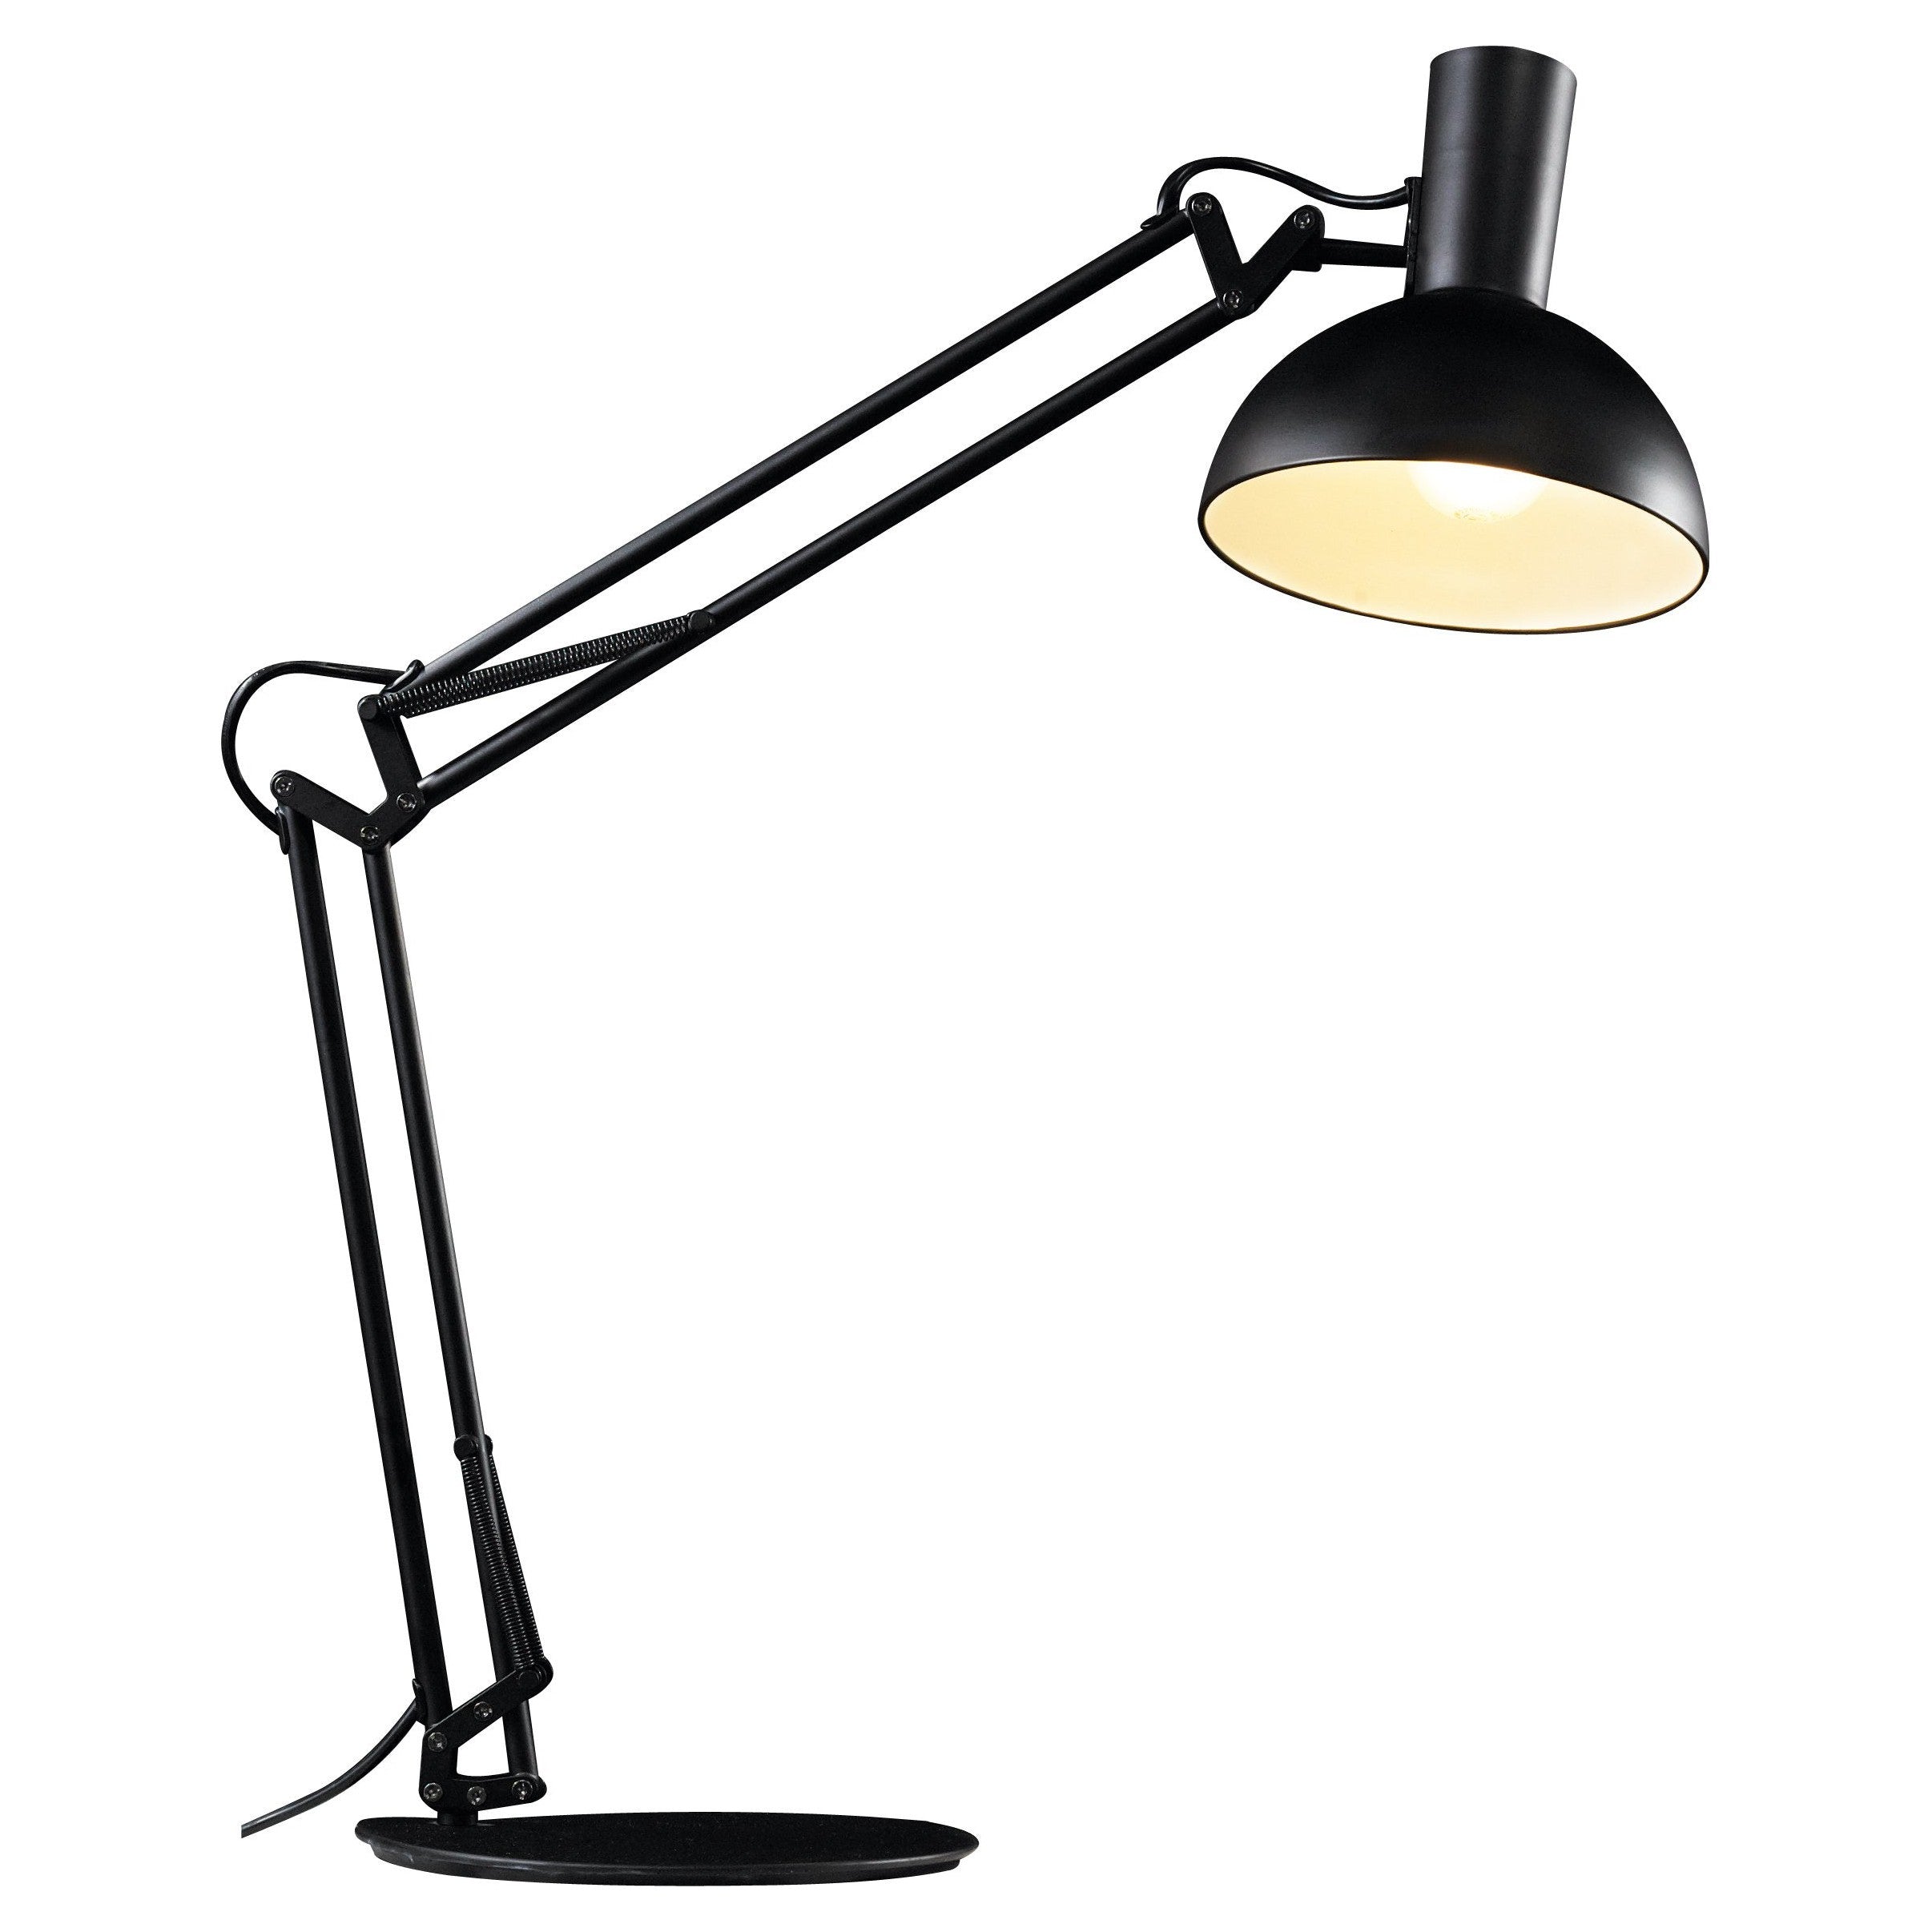 ePlafoniera - Arki | Klasyczna lampa biurkowa z ruchomym ramieniem i głowicą do zawieszenia na ścianie | Design For The People